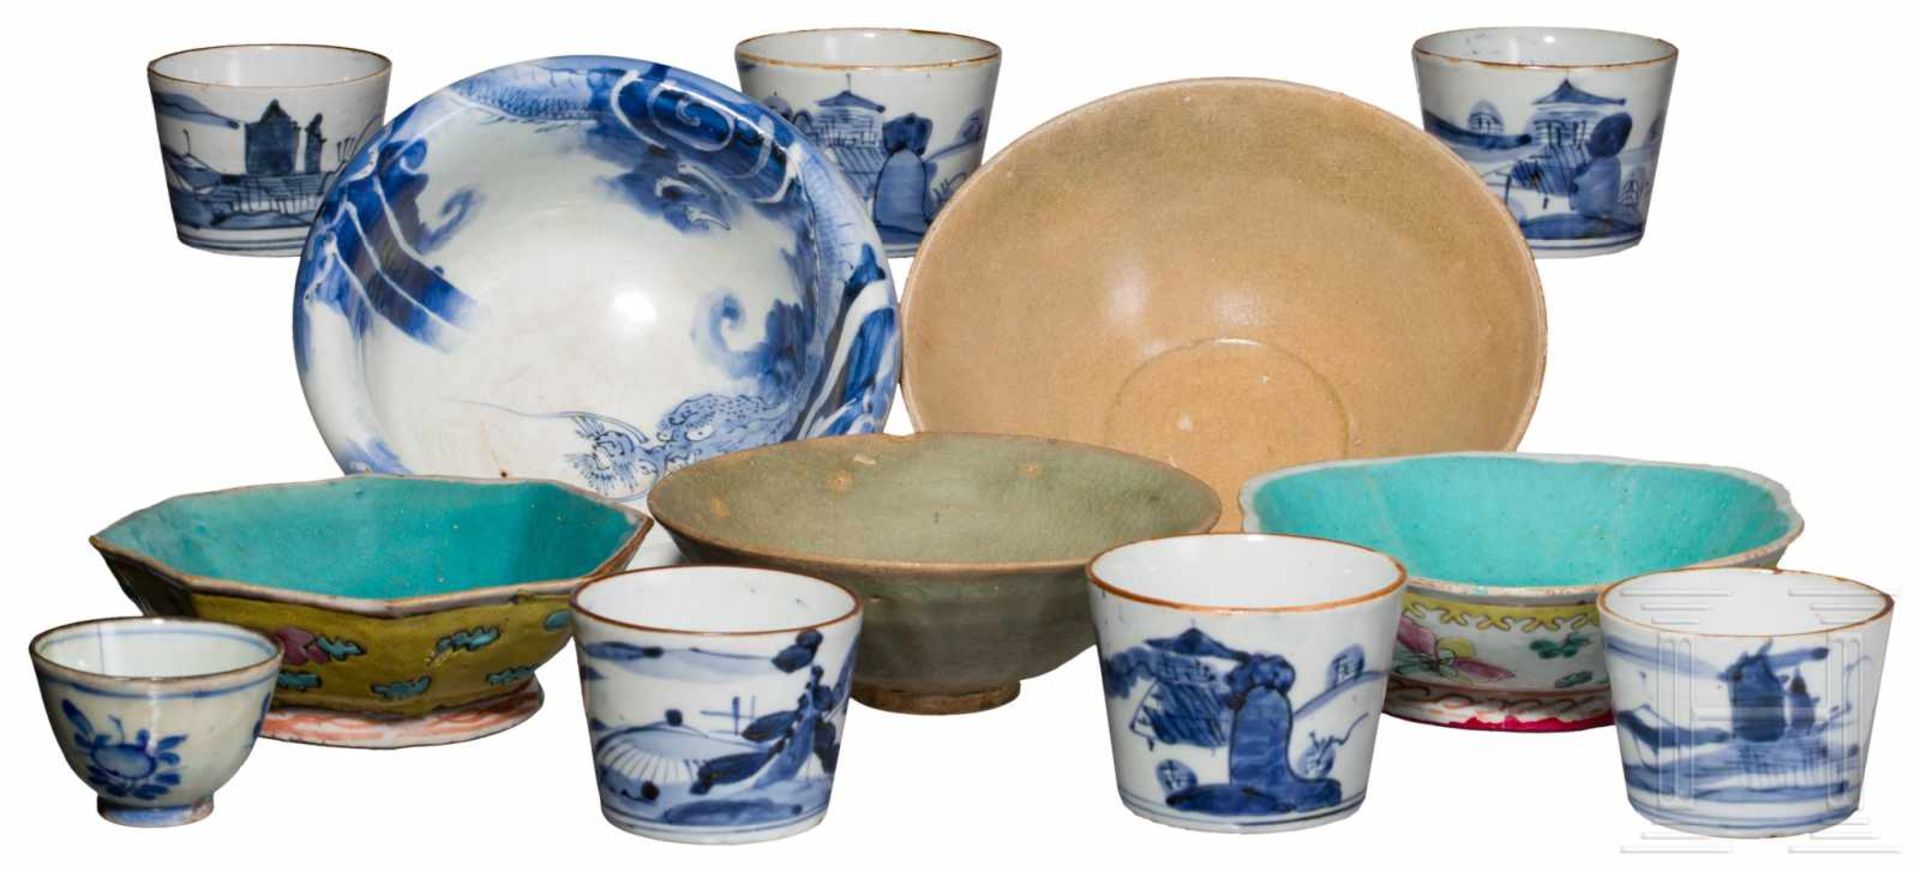 Zwölf Teile Porzellan und Keramik, Japan/China, 18. - 20. Jhdt.Darunter sieben japanische Becher